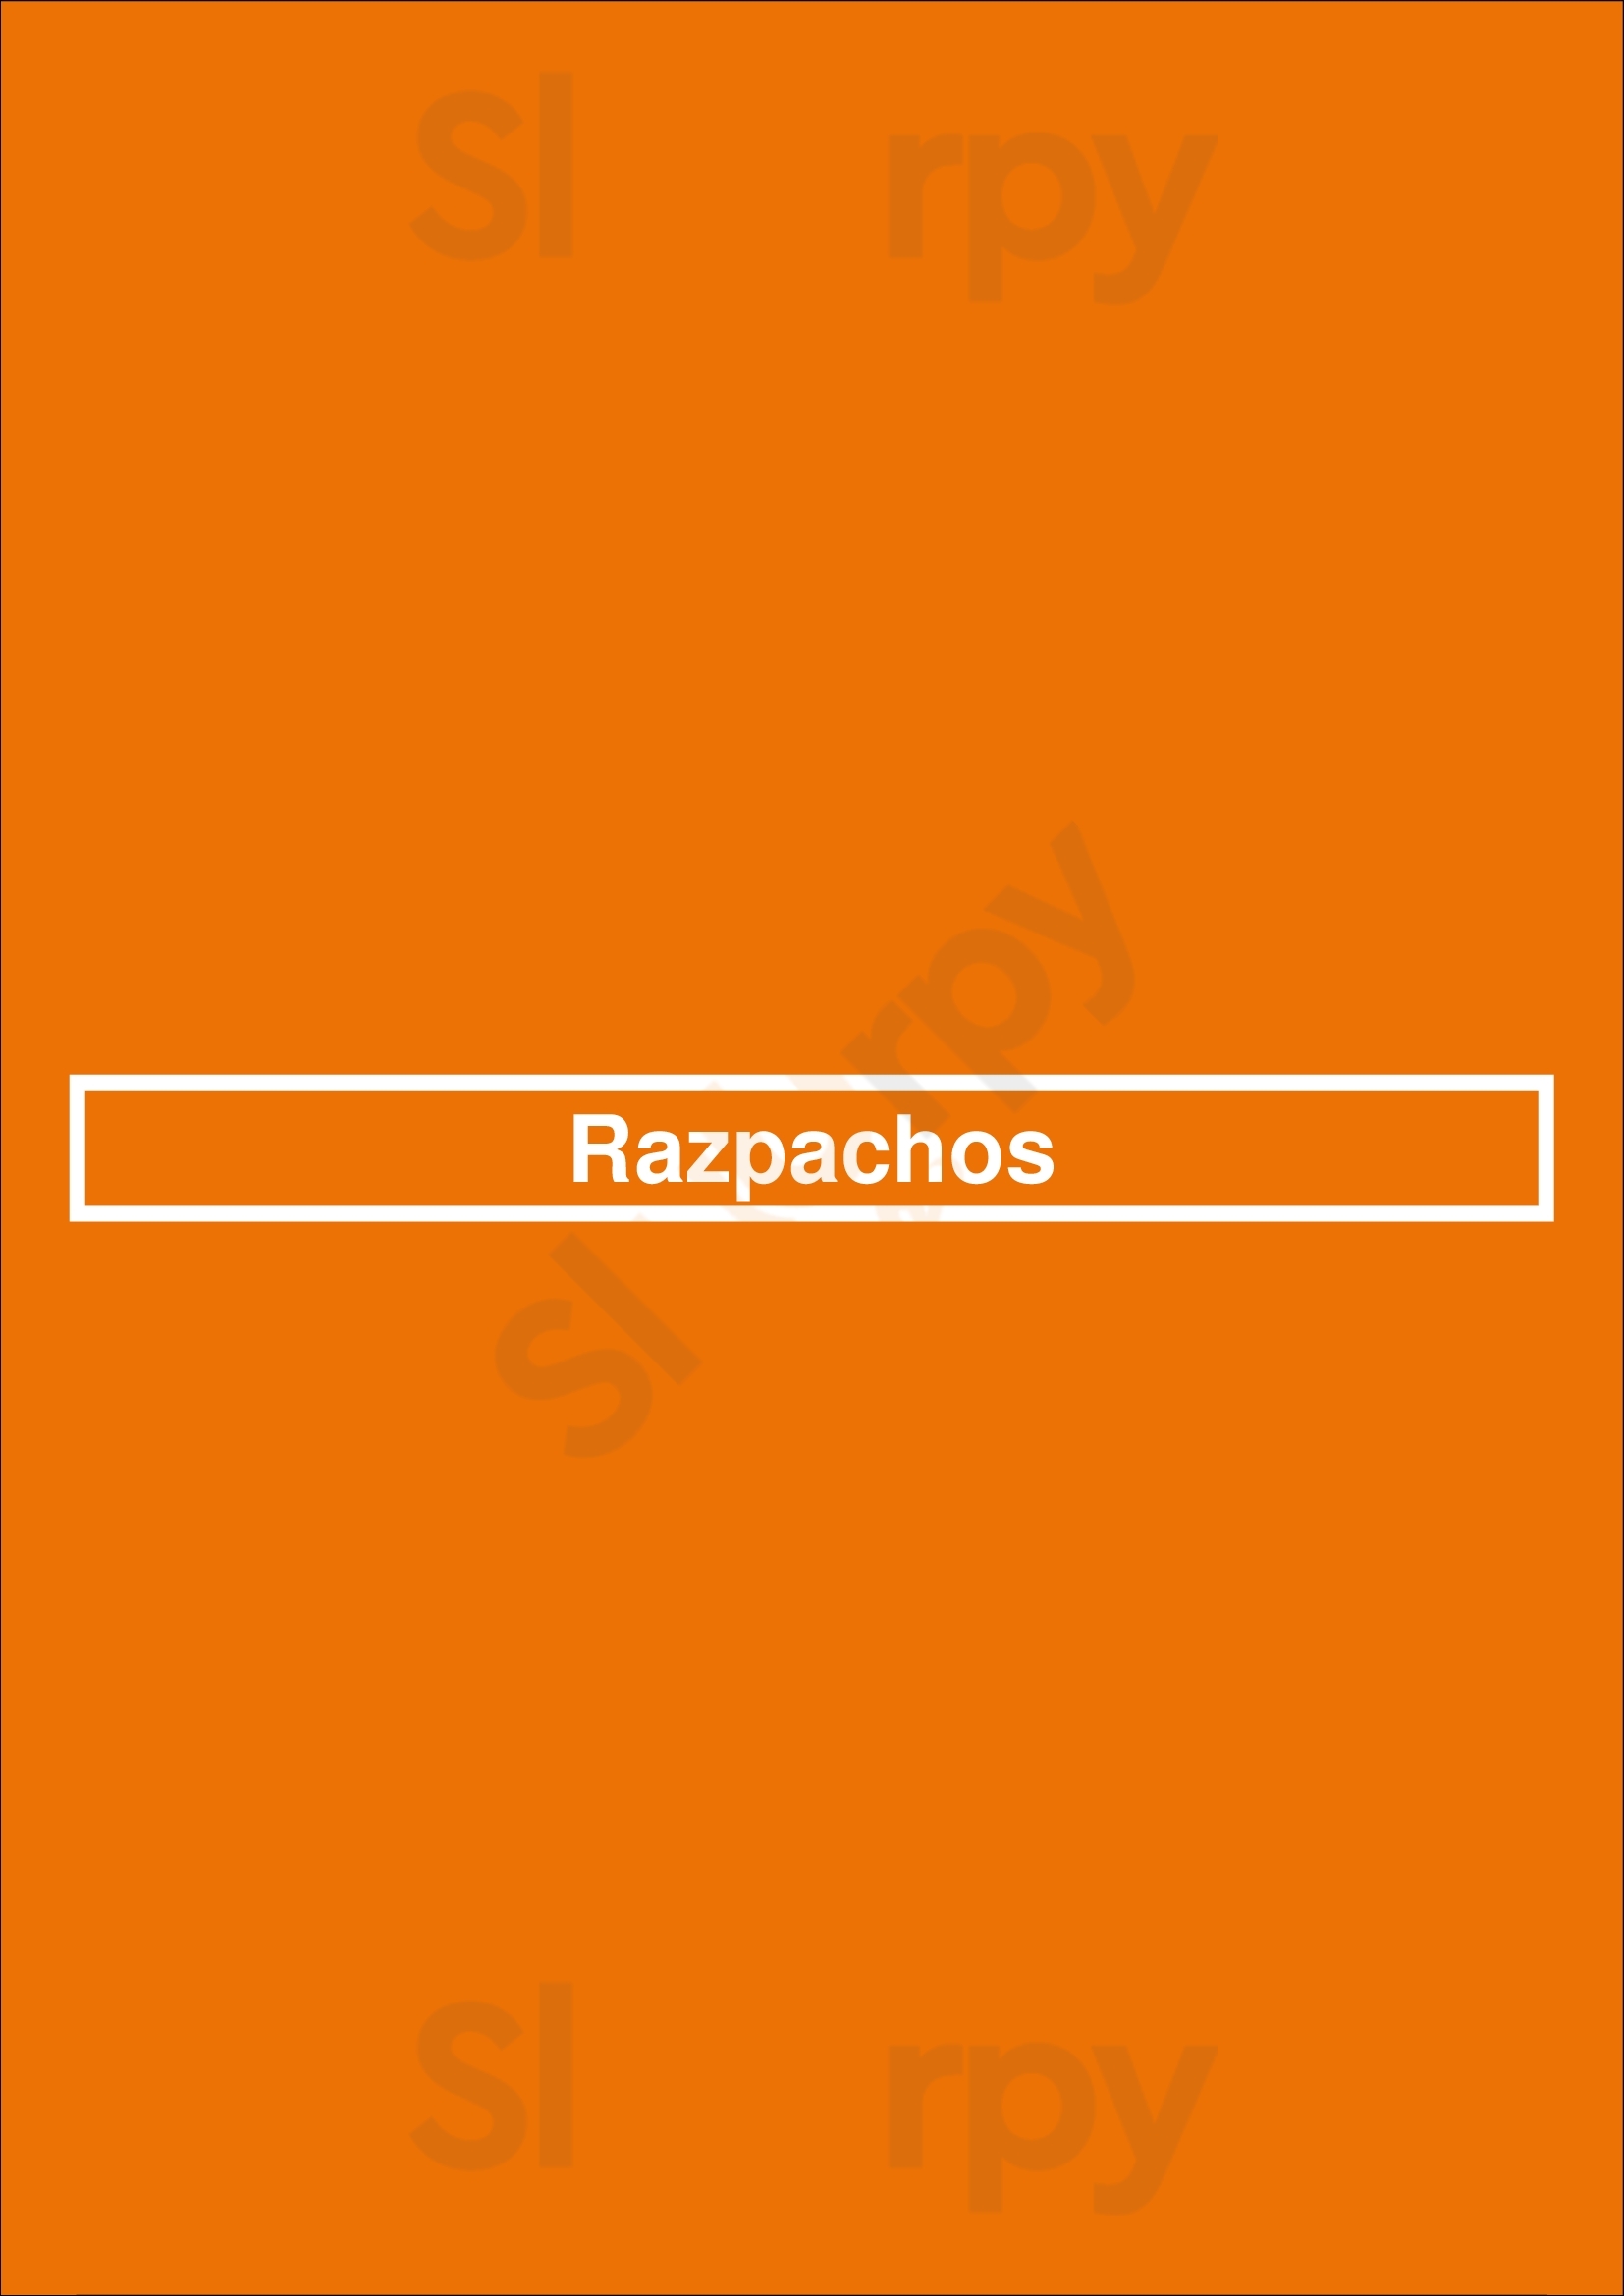 Razpachos Chicago Menu - 1